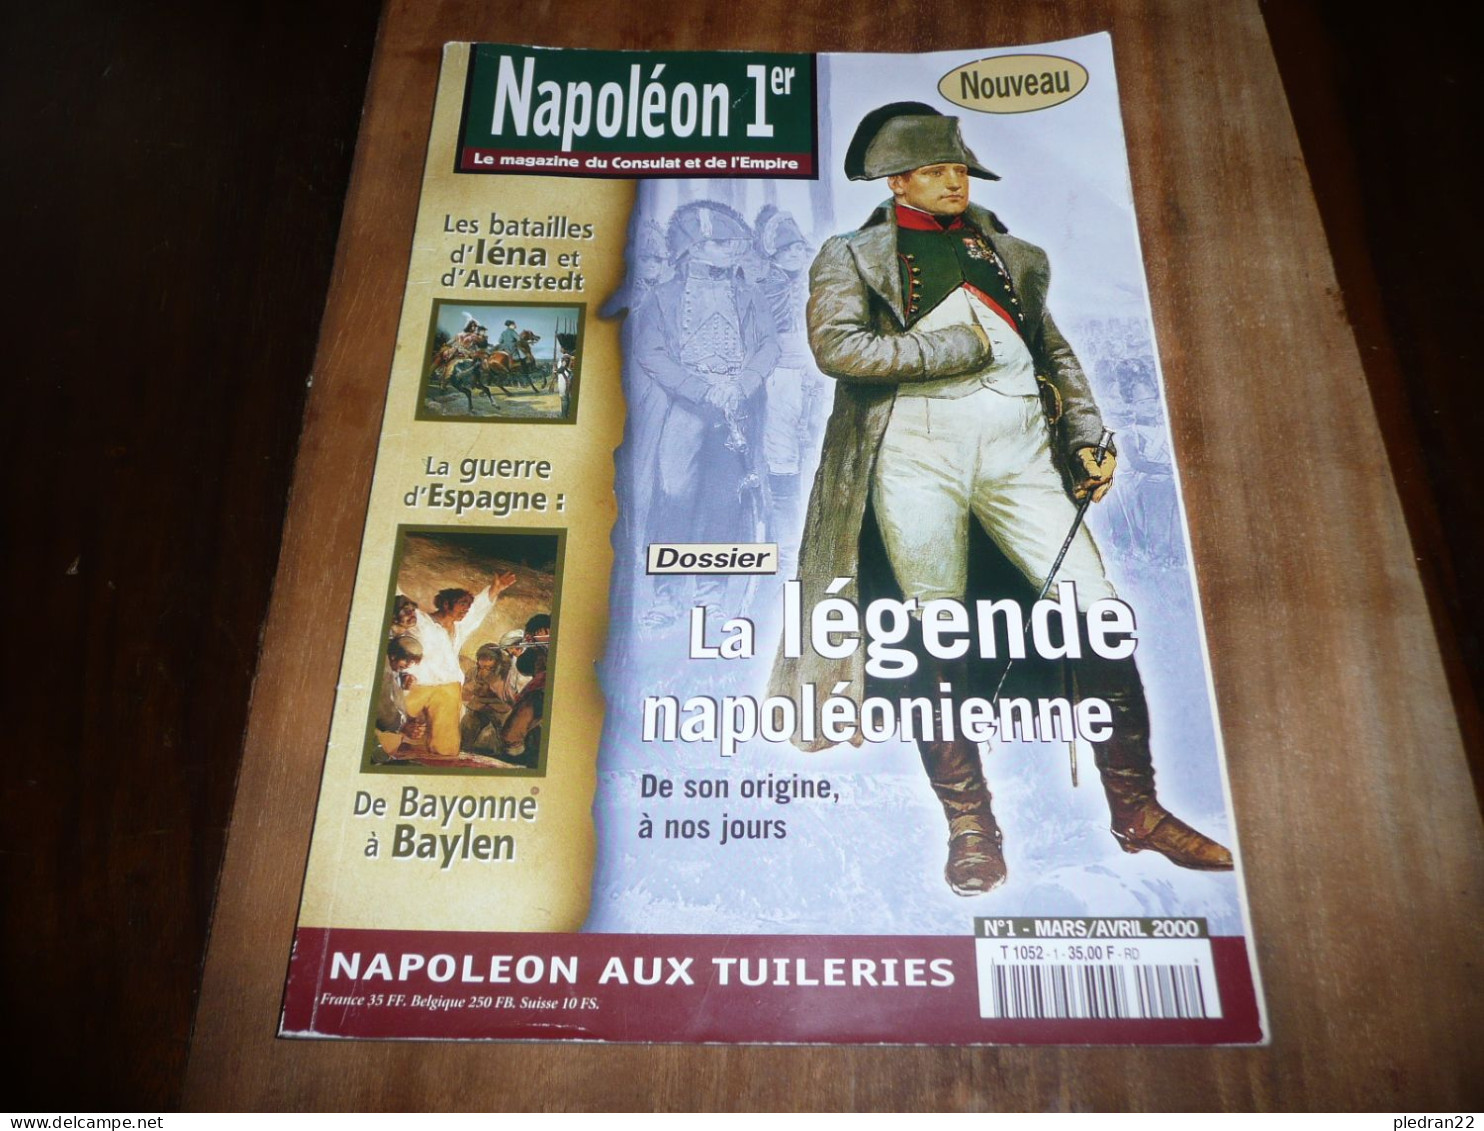 REVUE NAPOLEON 1er LE MAGAZINE DU CONSULAT ET DE L'EMPIRE N° 1 MARS AVRIL 2000 - History